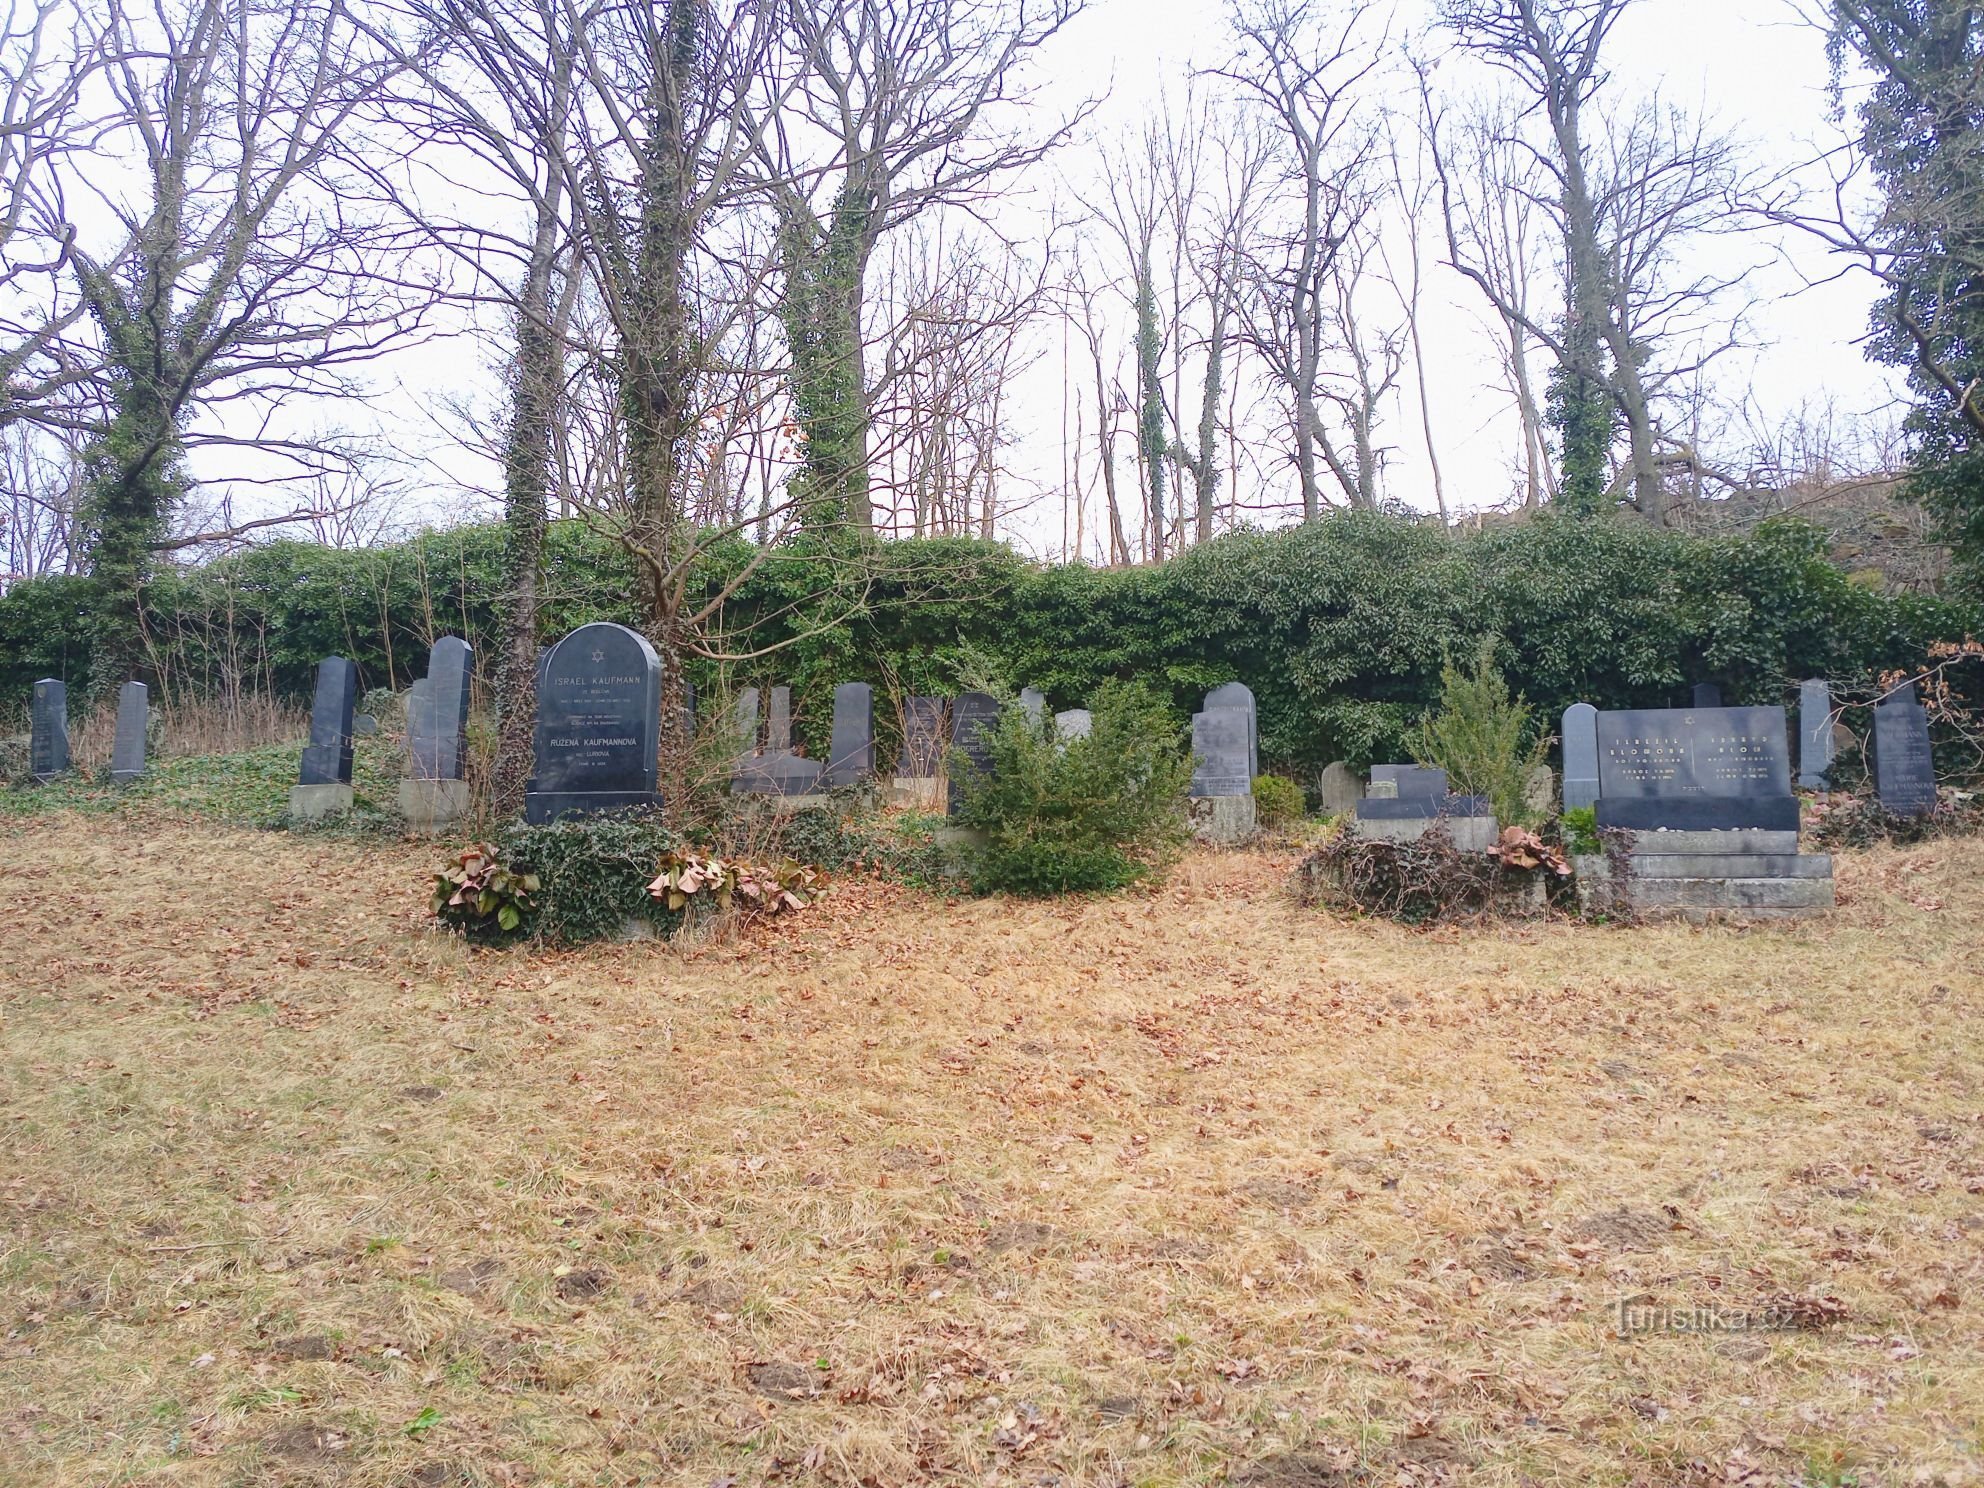 3. Vista de parte do cemitério